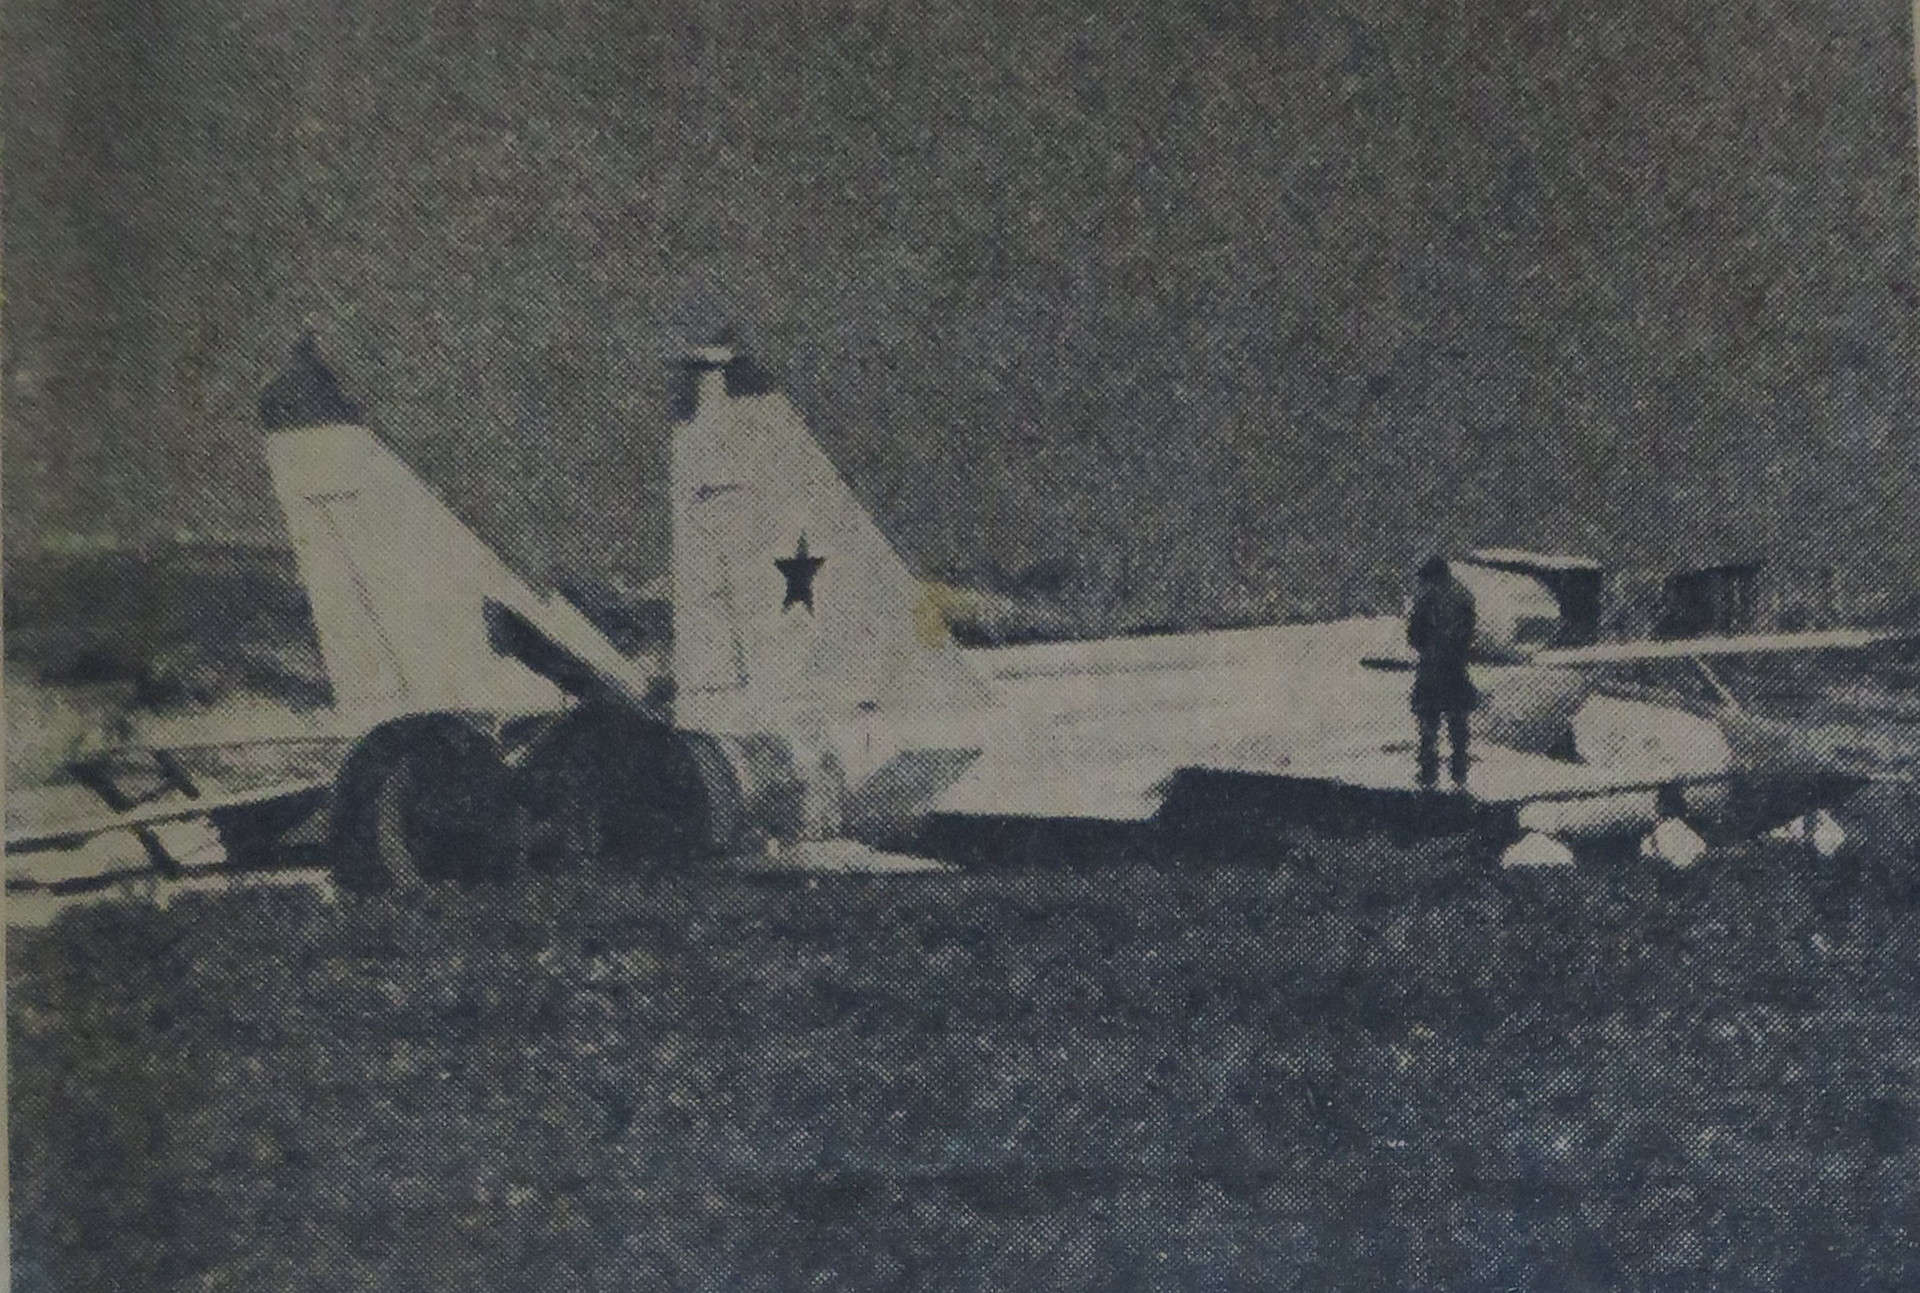 MIG25強行着陸事件から40年: 航空祭＆交通系、その他いろいろ趣味三昧。。